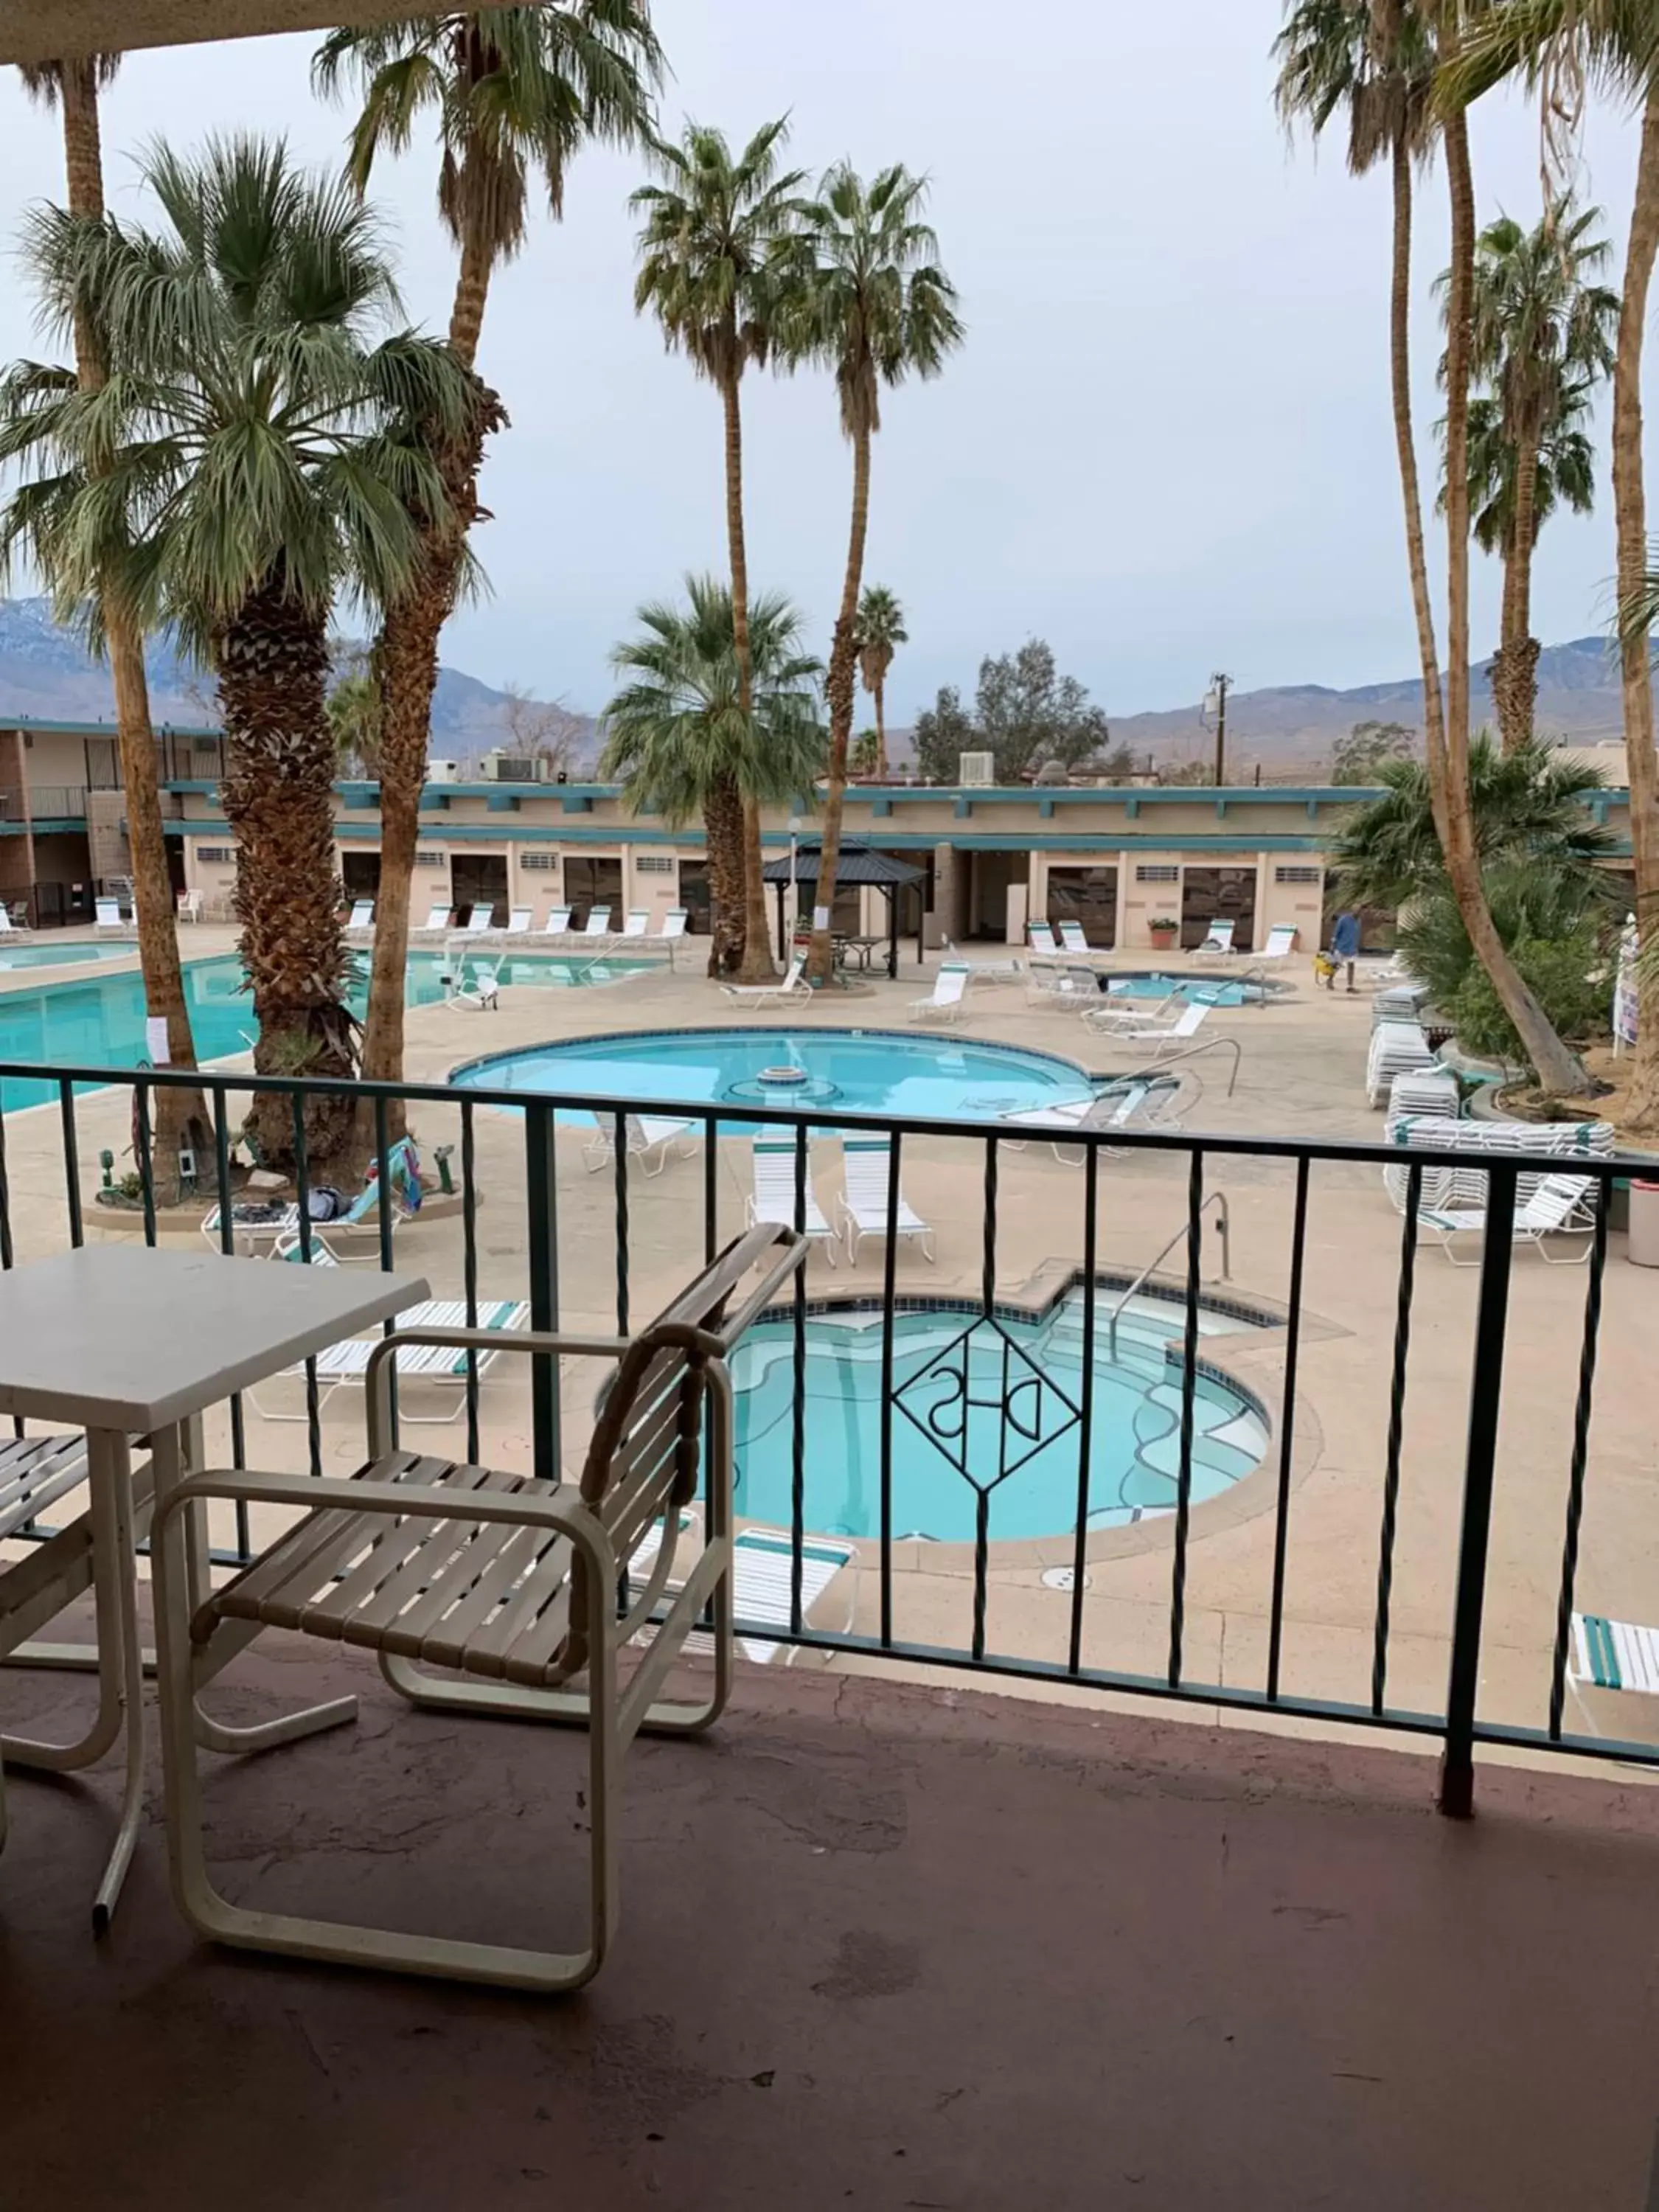 Pool View in Desert Hot Springs Spa Hotel